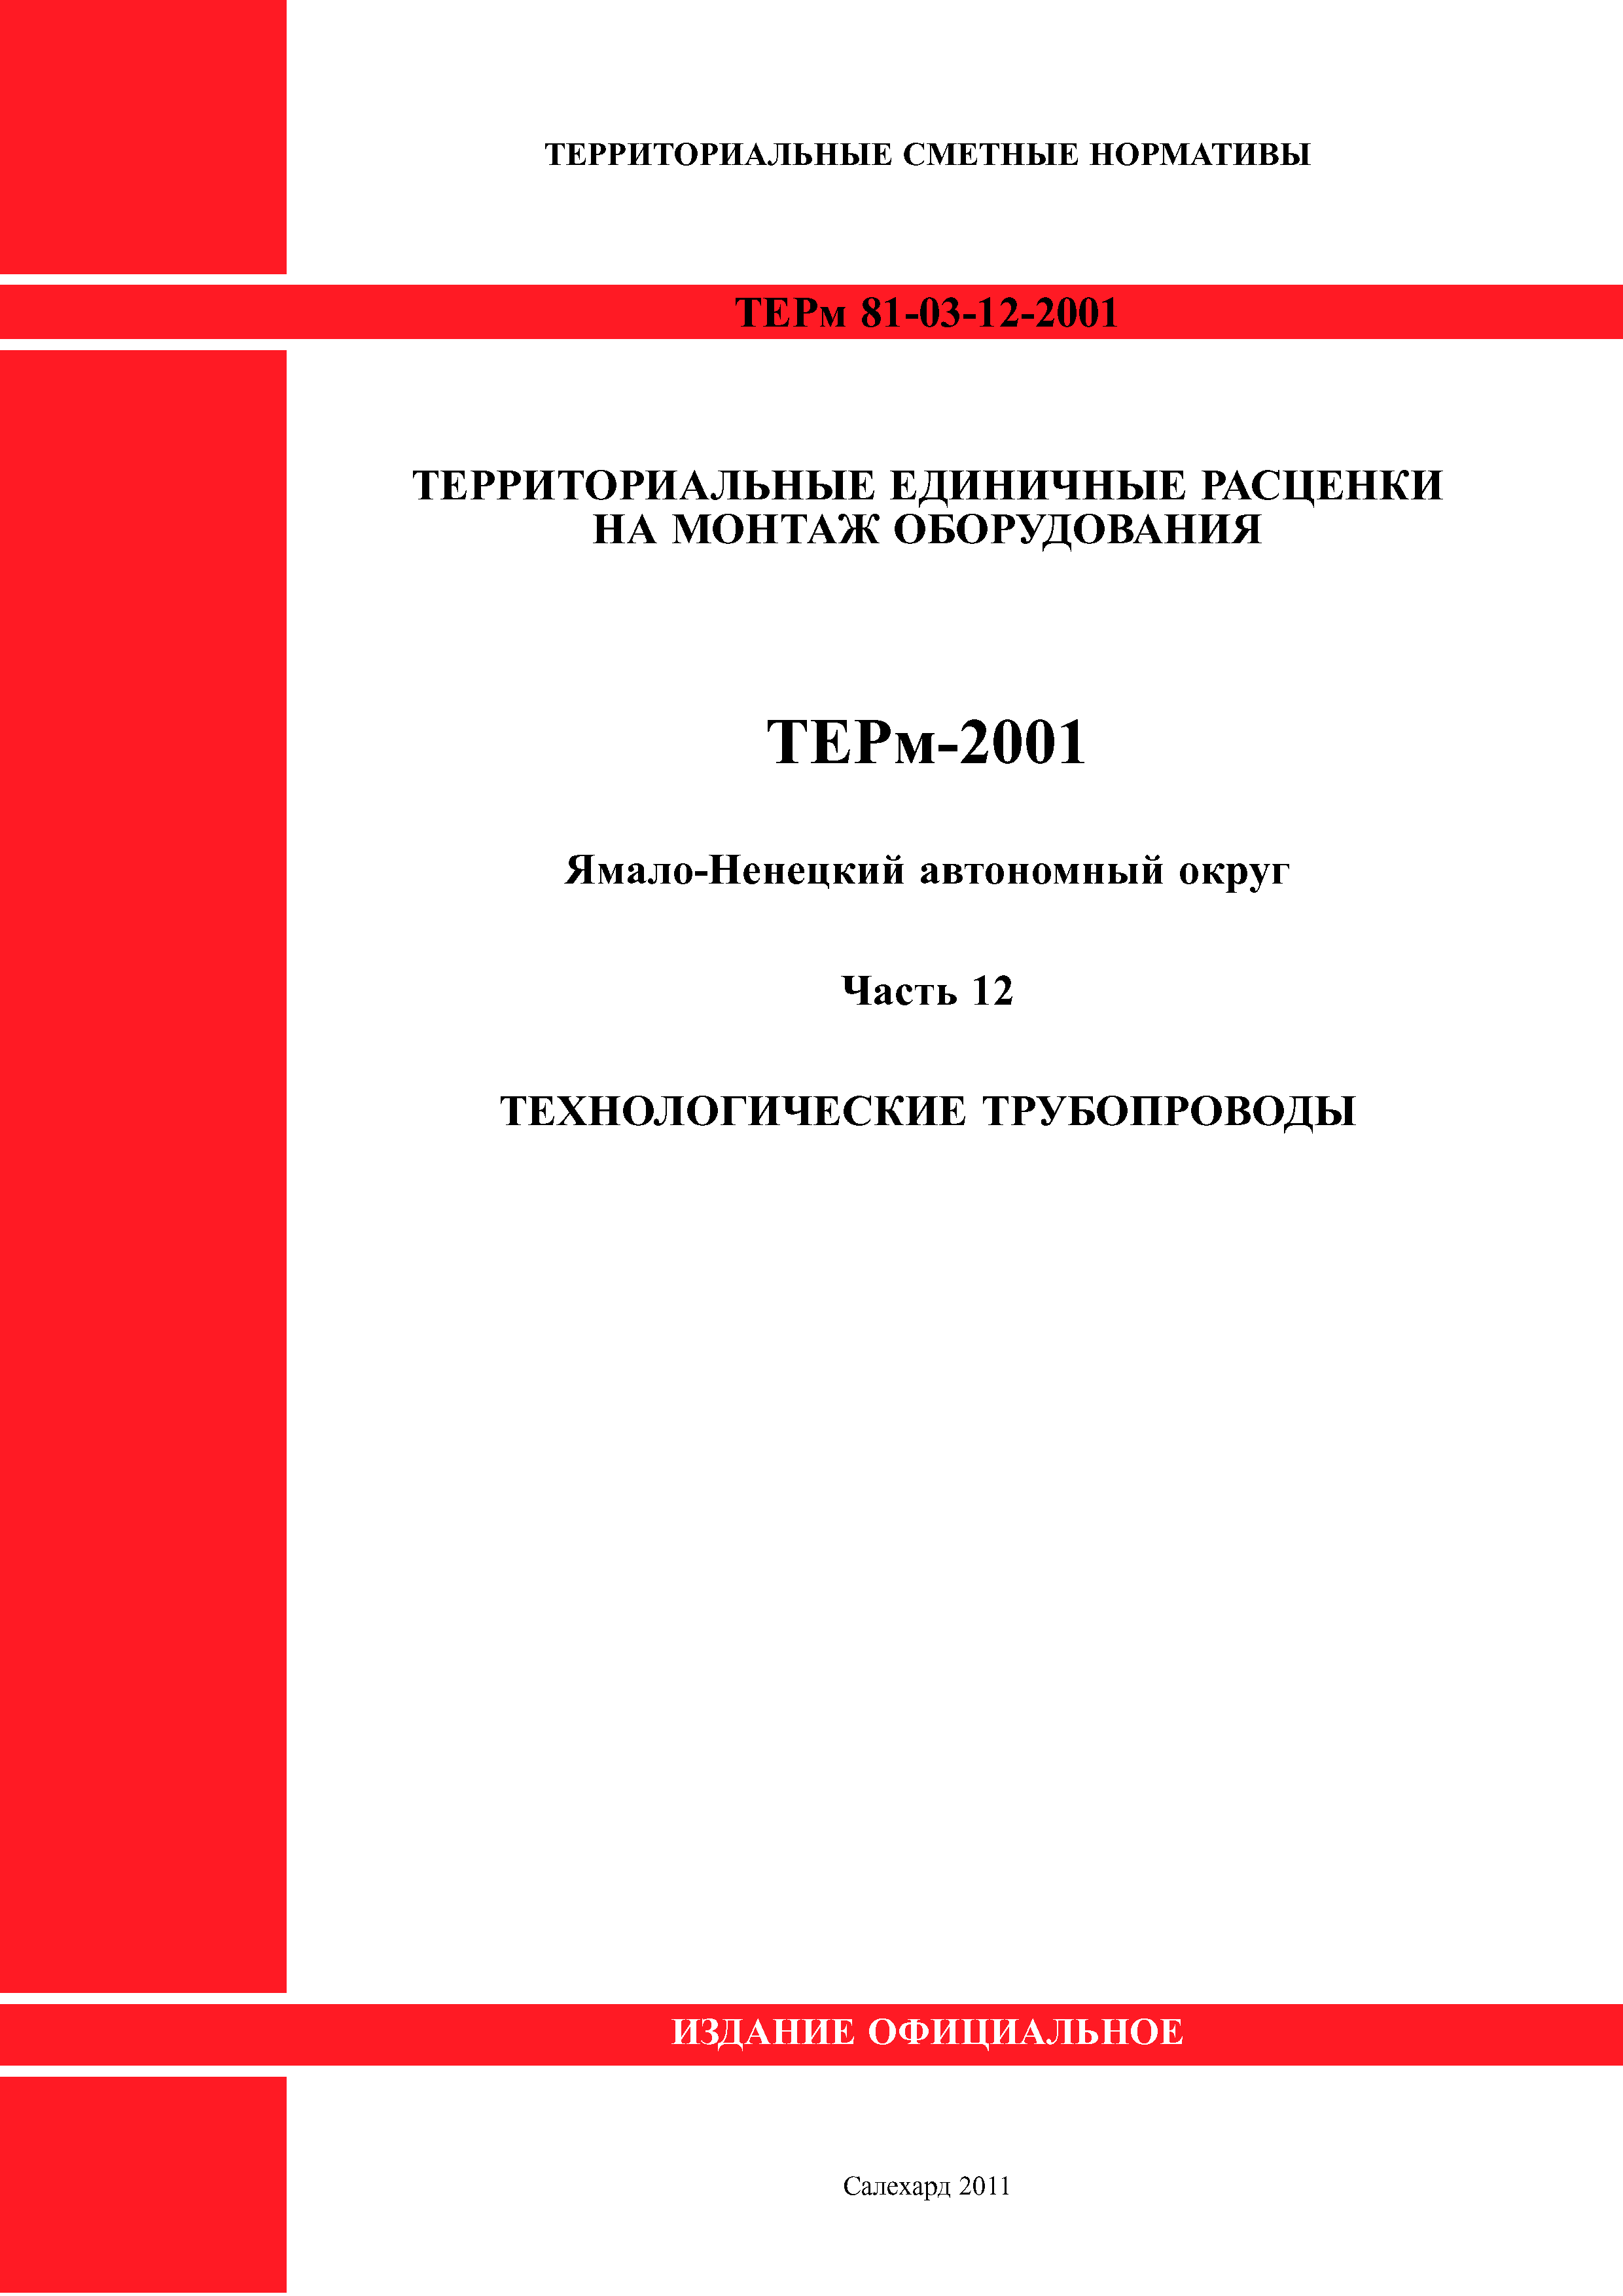 ТЕРм Ямало-Ненецкий автономный округ 12-2001